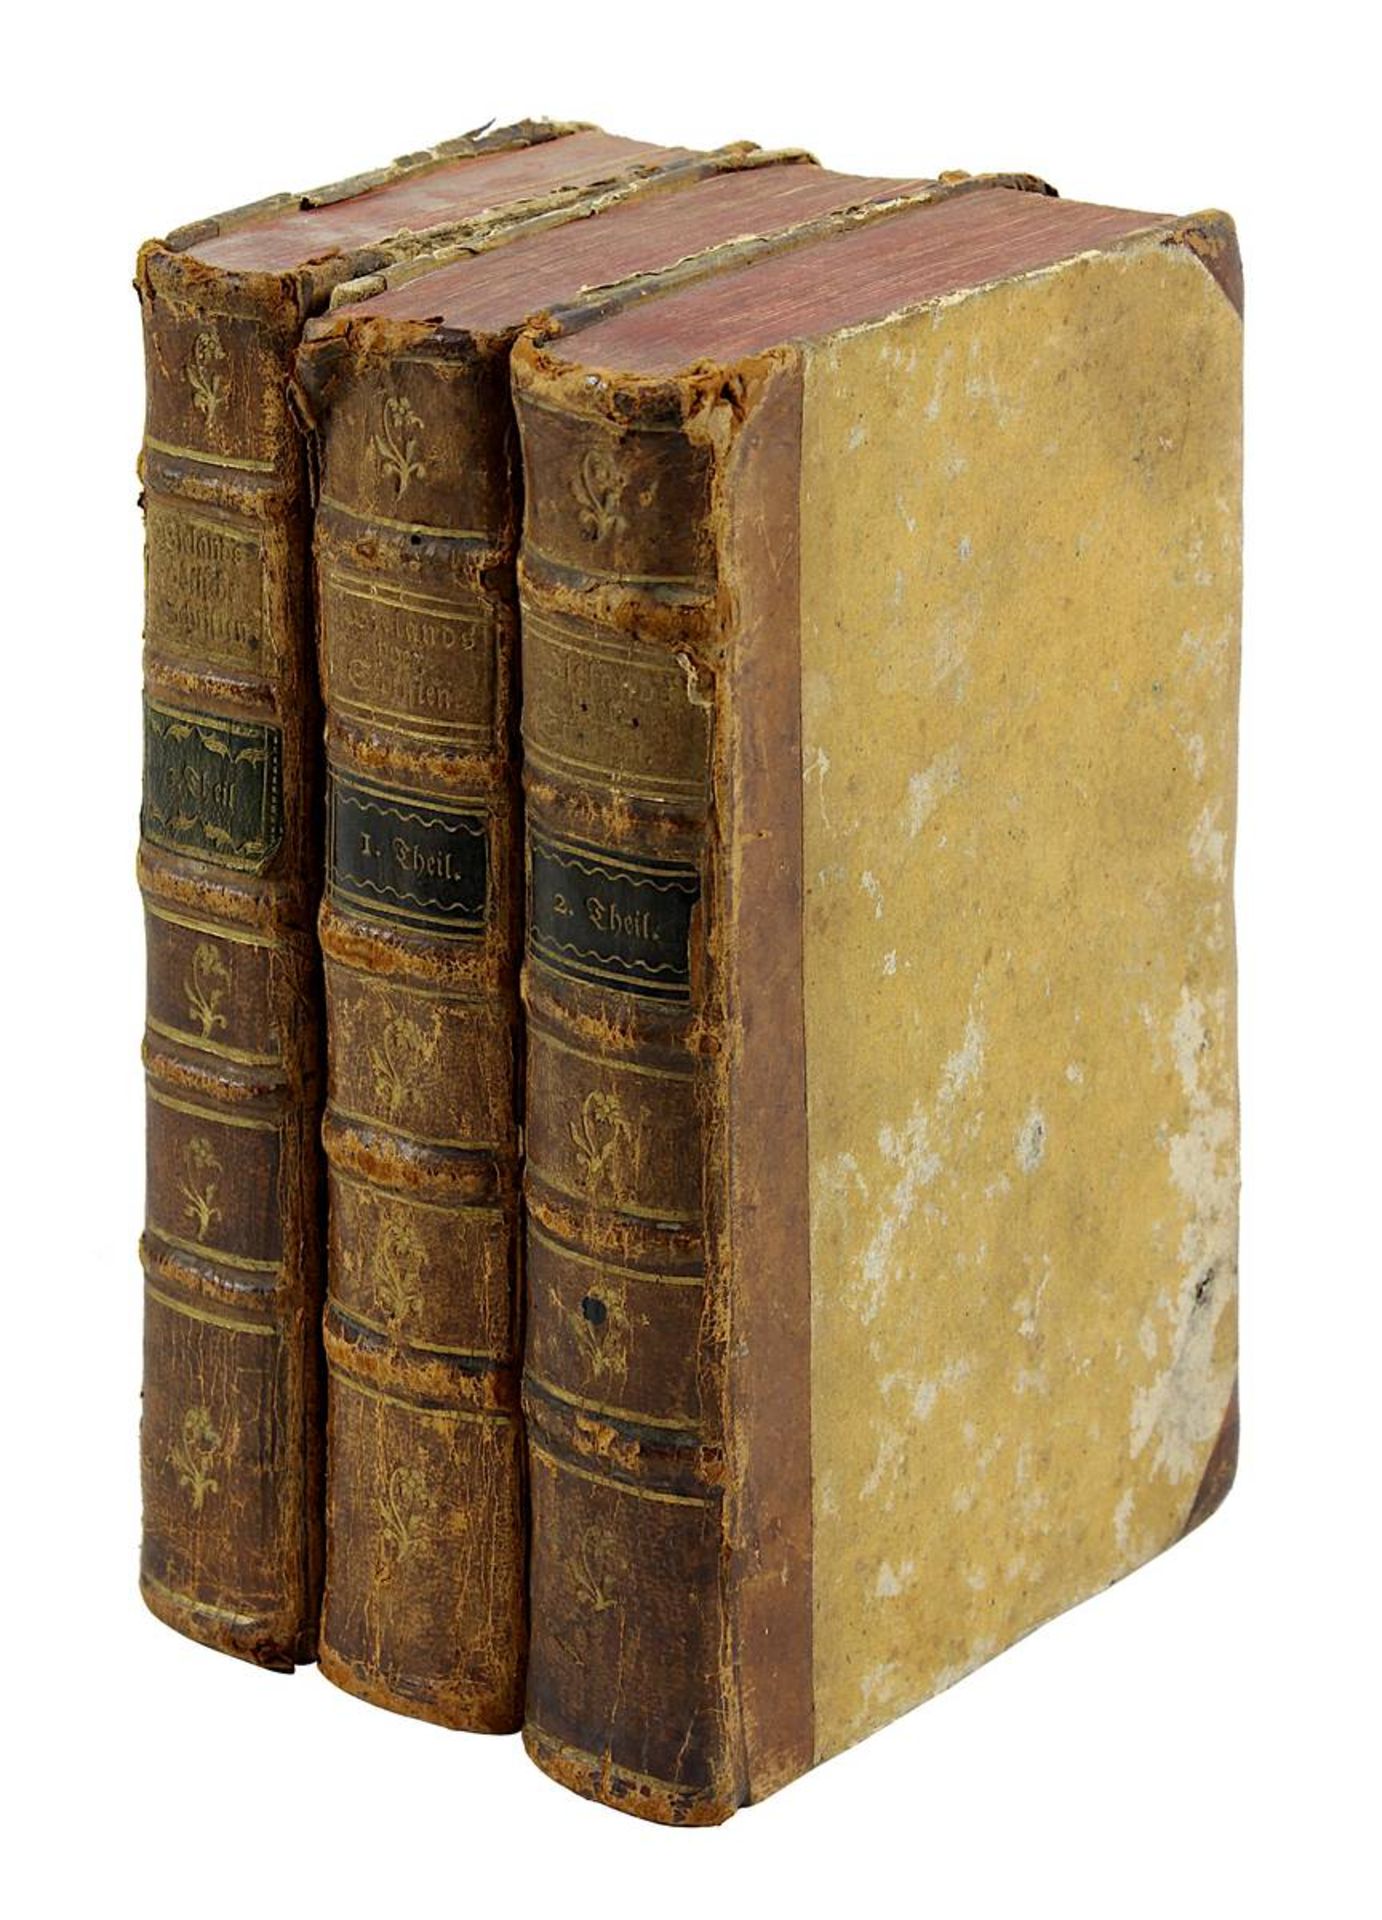 Wieland´s Sammlung poetischer Schriften, drei Bände, Carlsruhe, Verlag Christian Gottlieb Schmieder, - Image 2 of 2